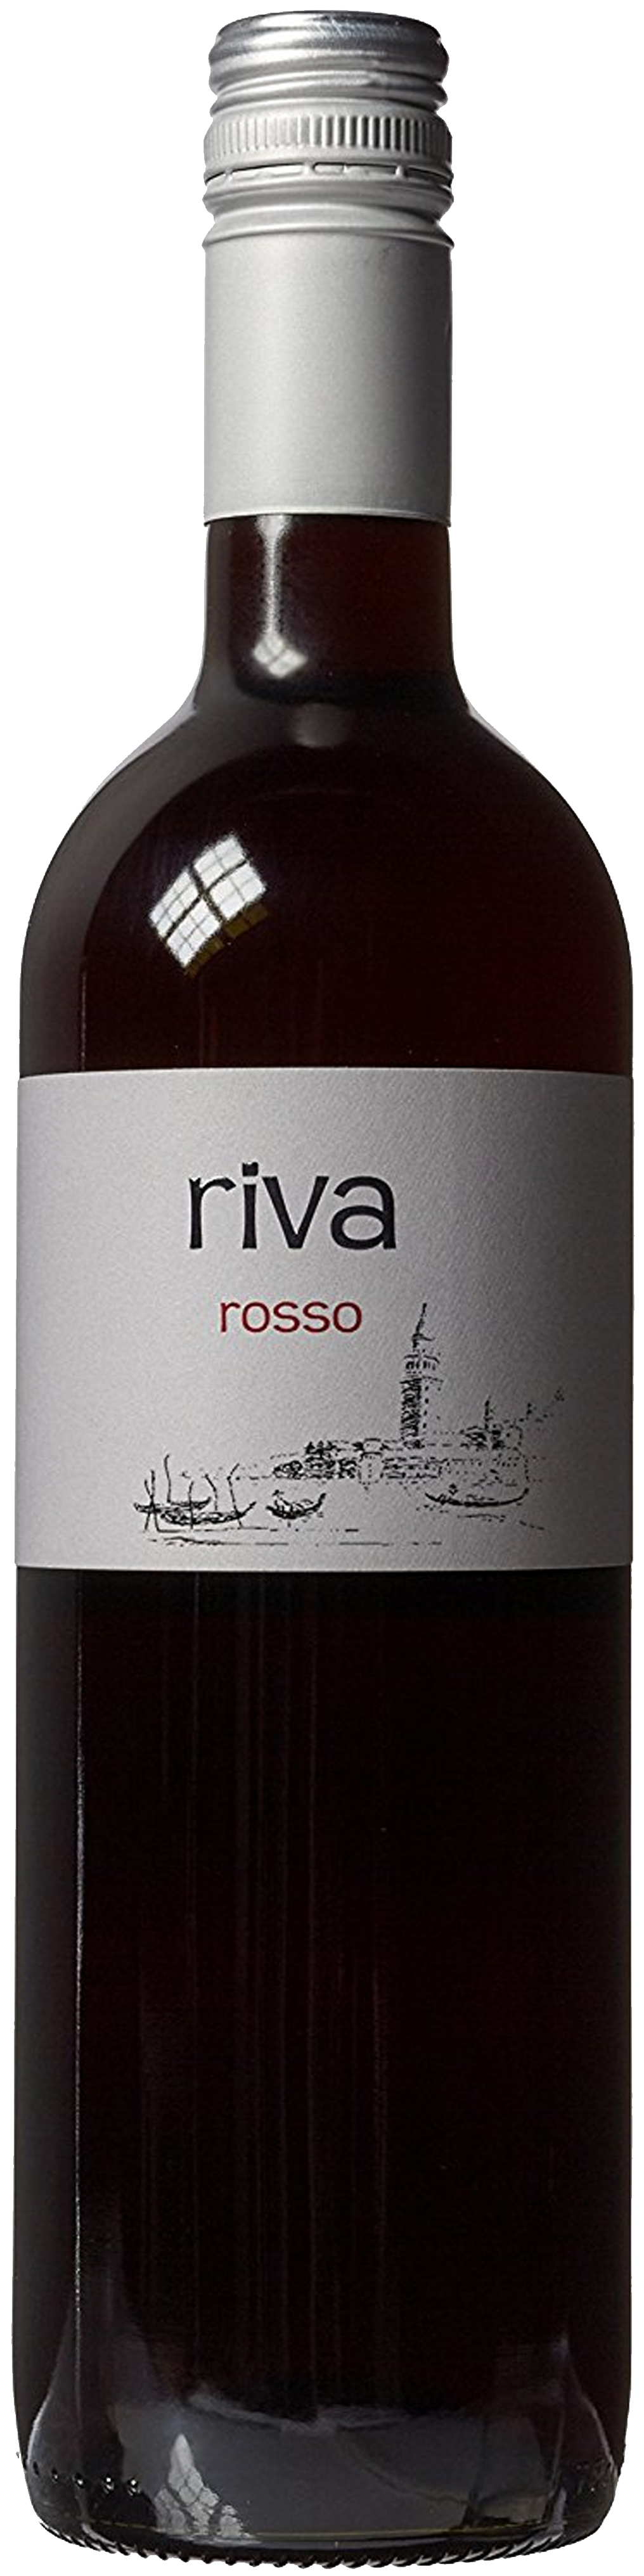 Bottle shot of 2011 Riva Rosso